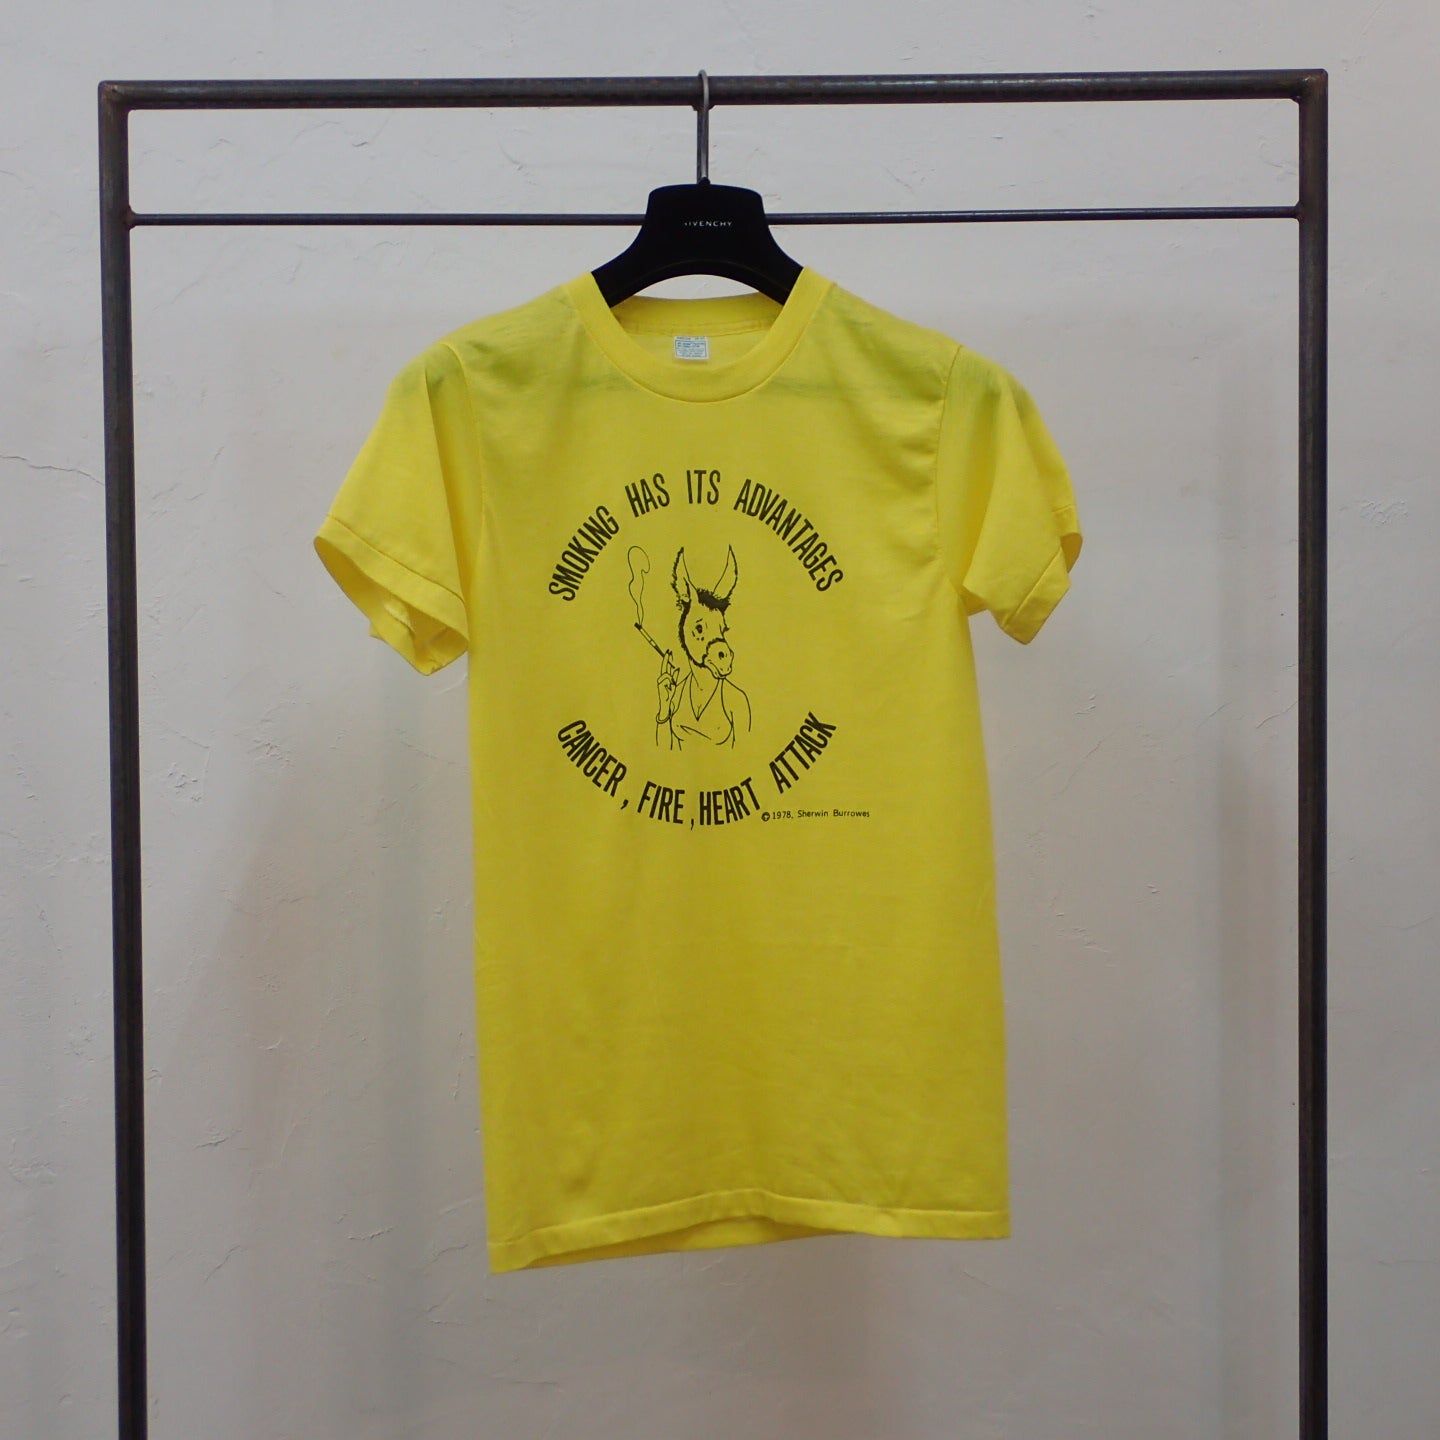 T-shirt Sherwin Burrowes des années 70 "T-shirt à risque de fumer"